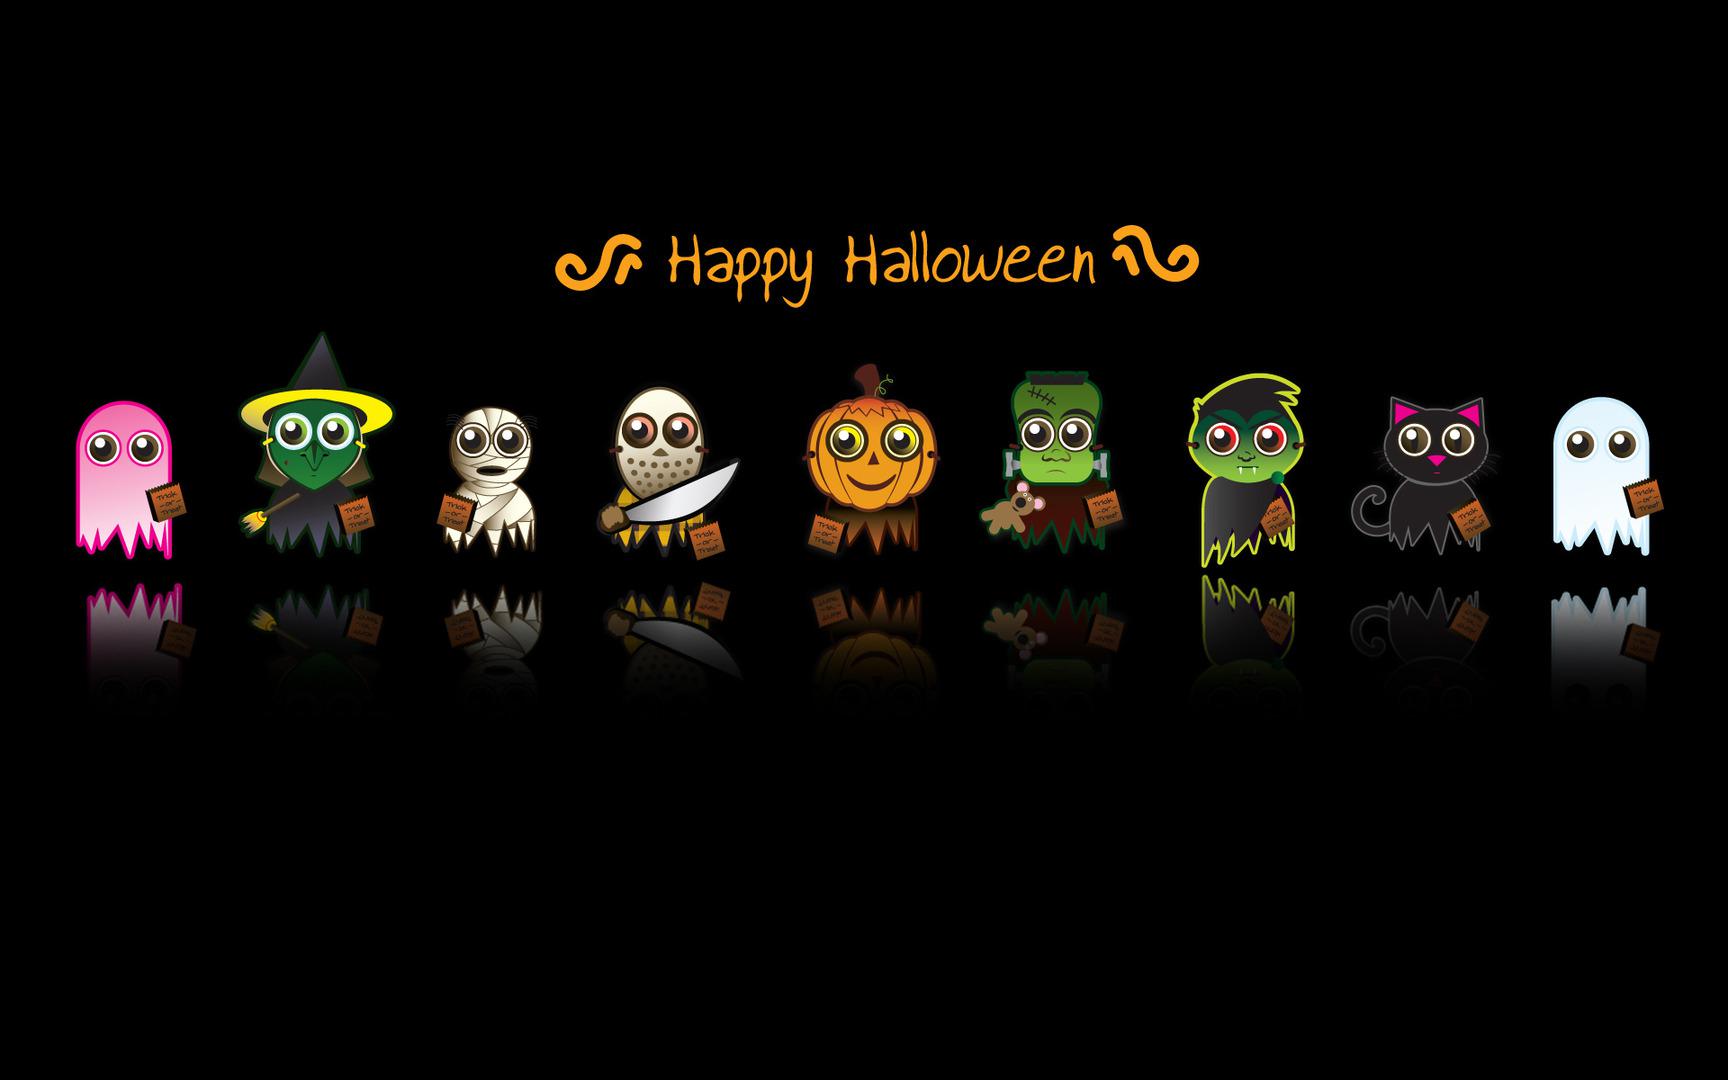 Happy Halloween Cartoon HD Wallpaper, get it now